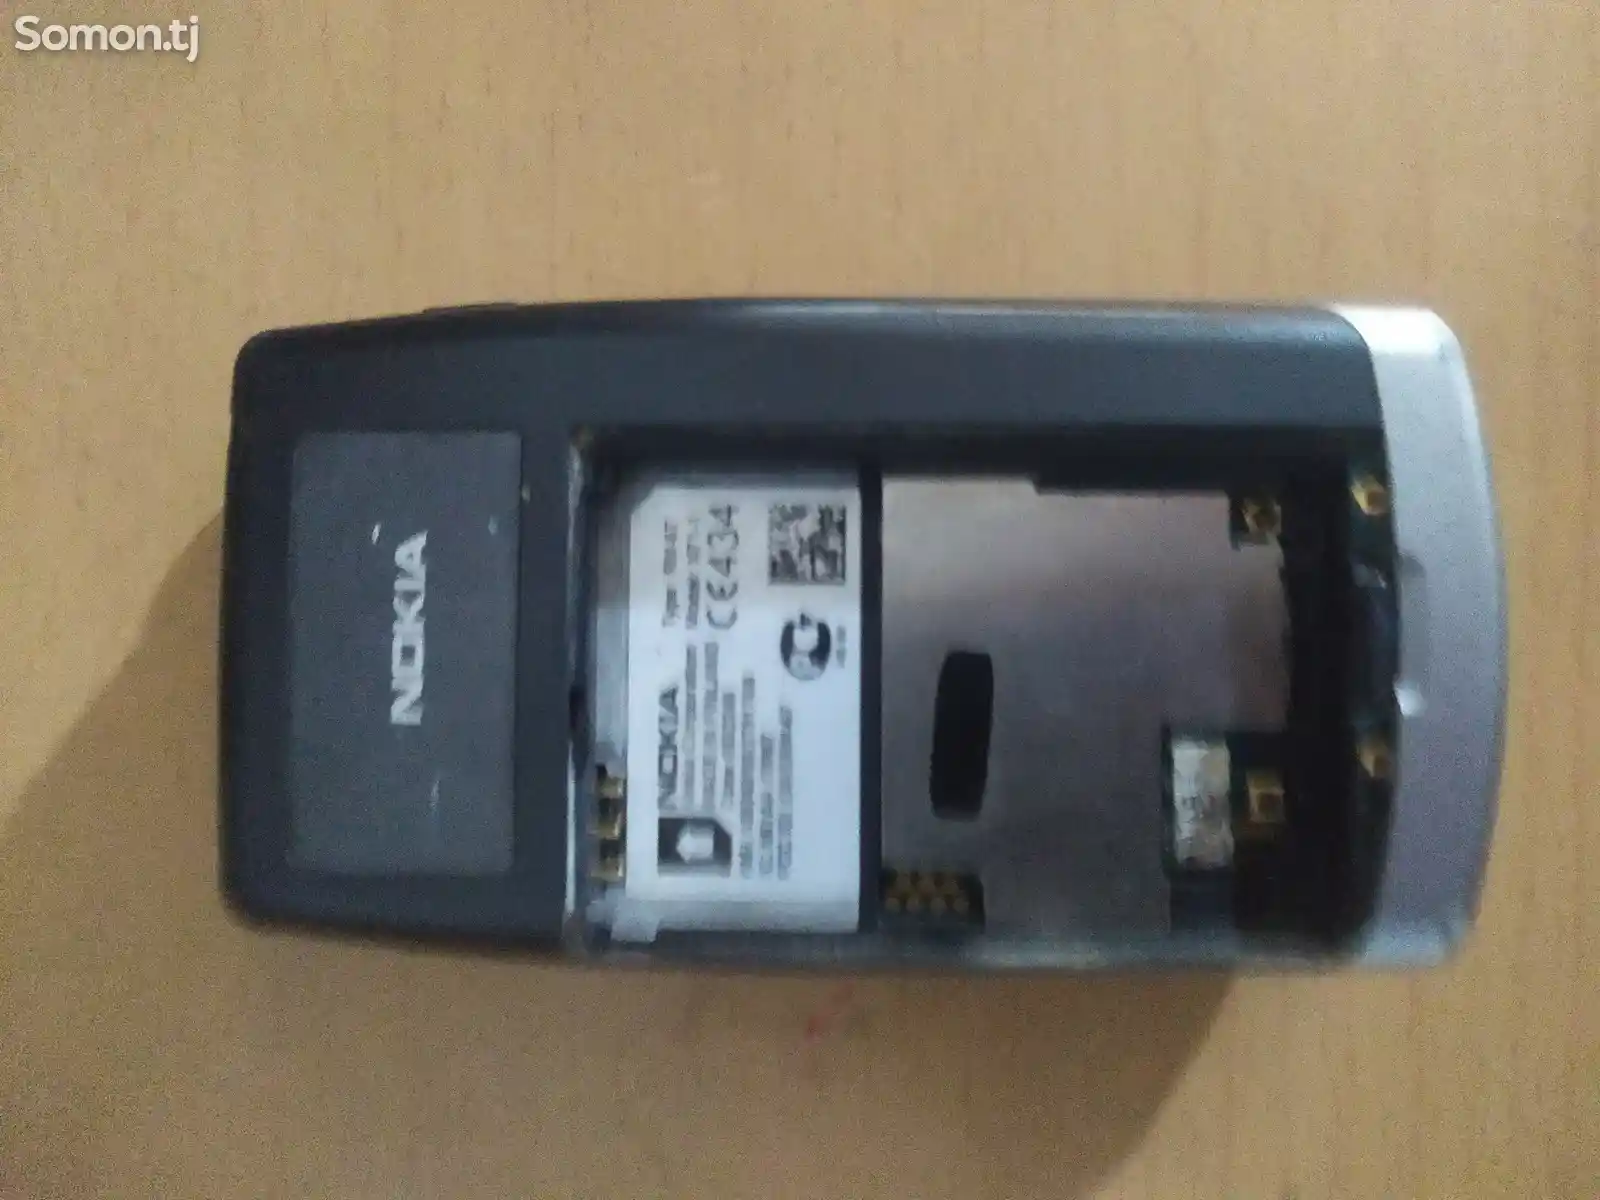 Nokia N71-2